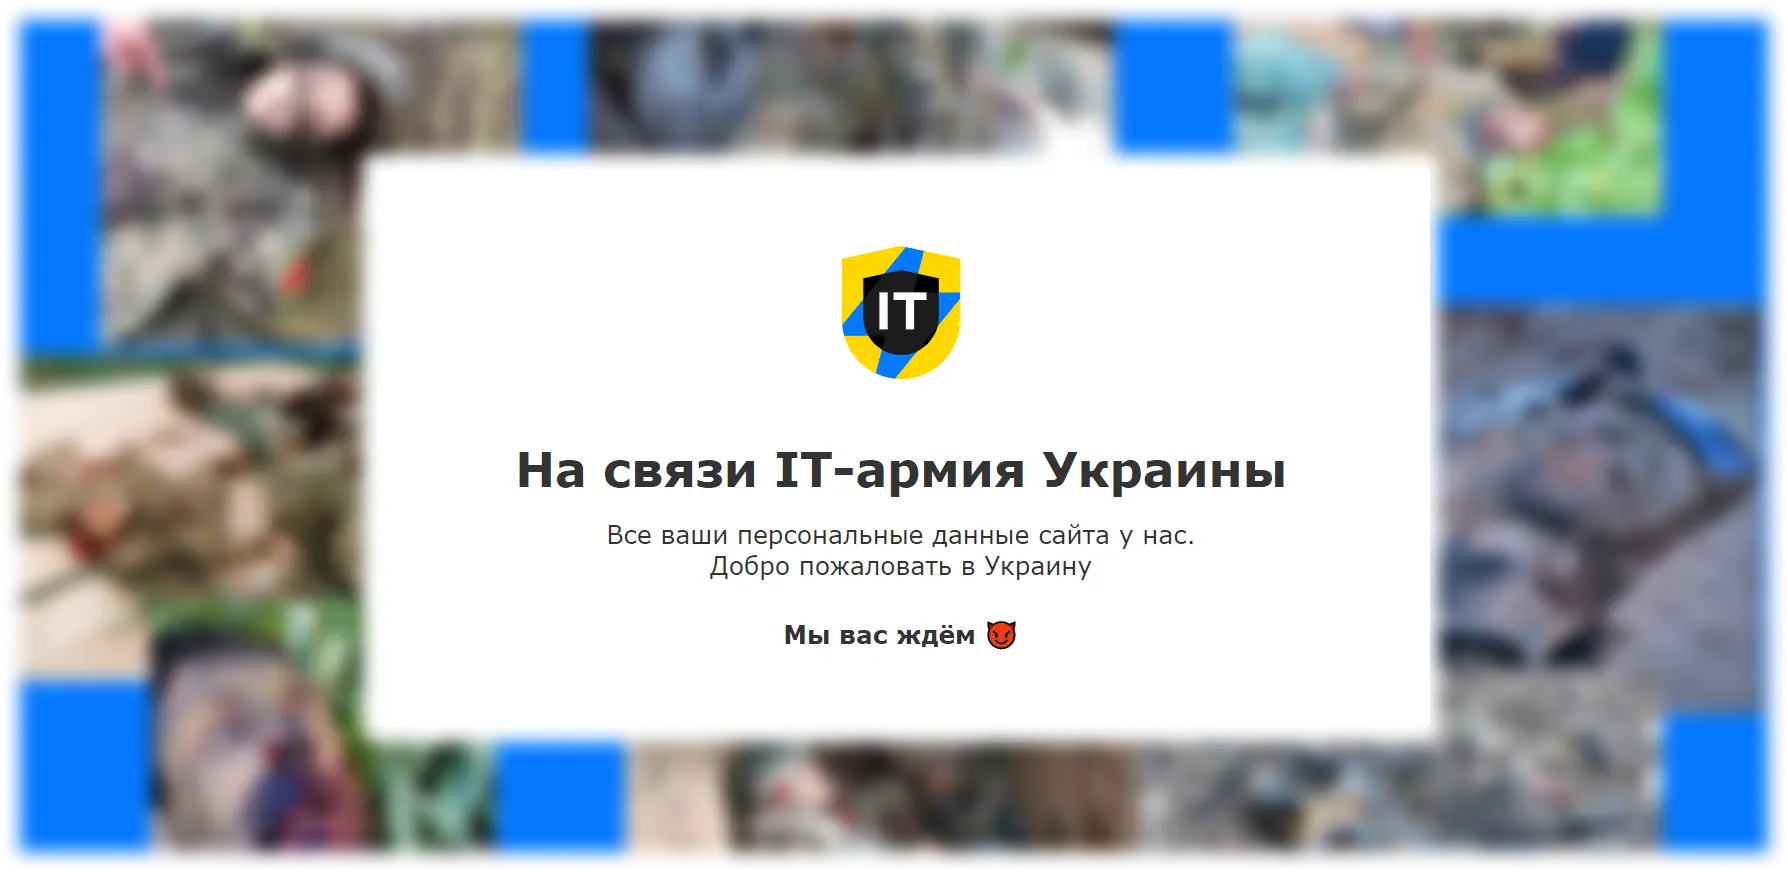 Скрин экрана взломанного сайта ВЧК Вагнер с обращением от хакеров